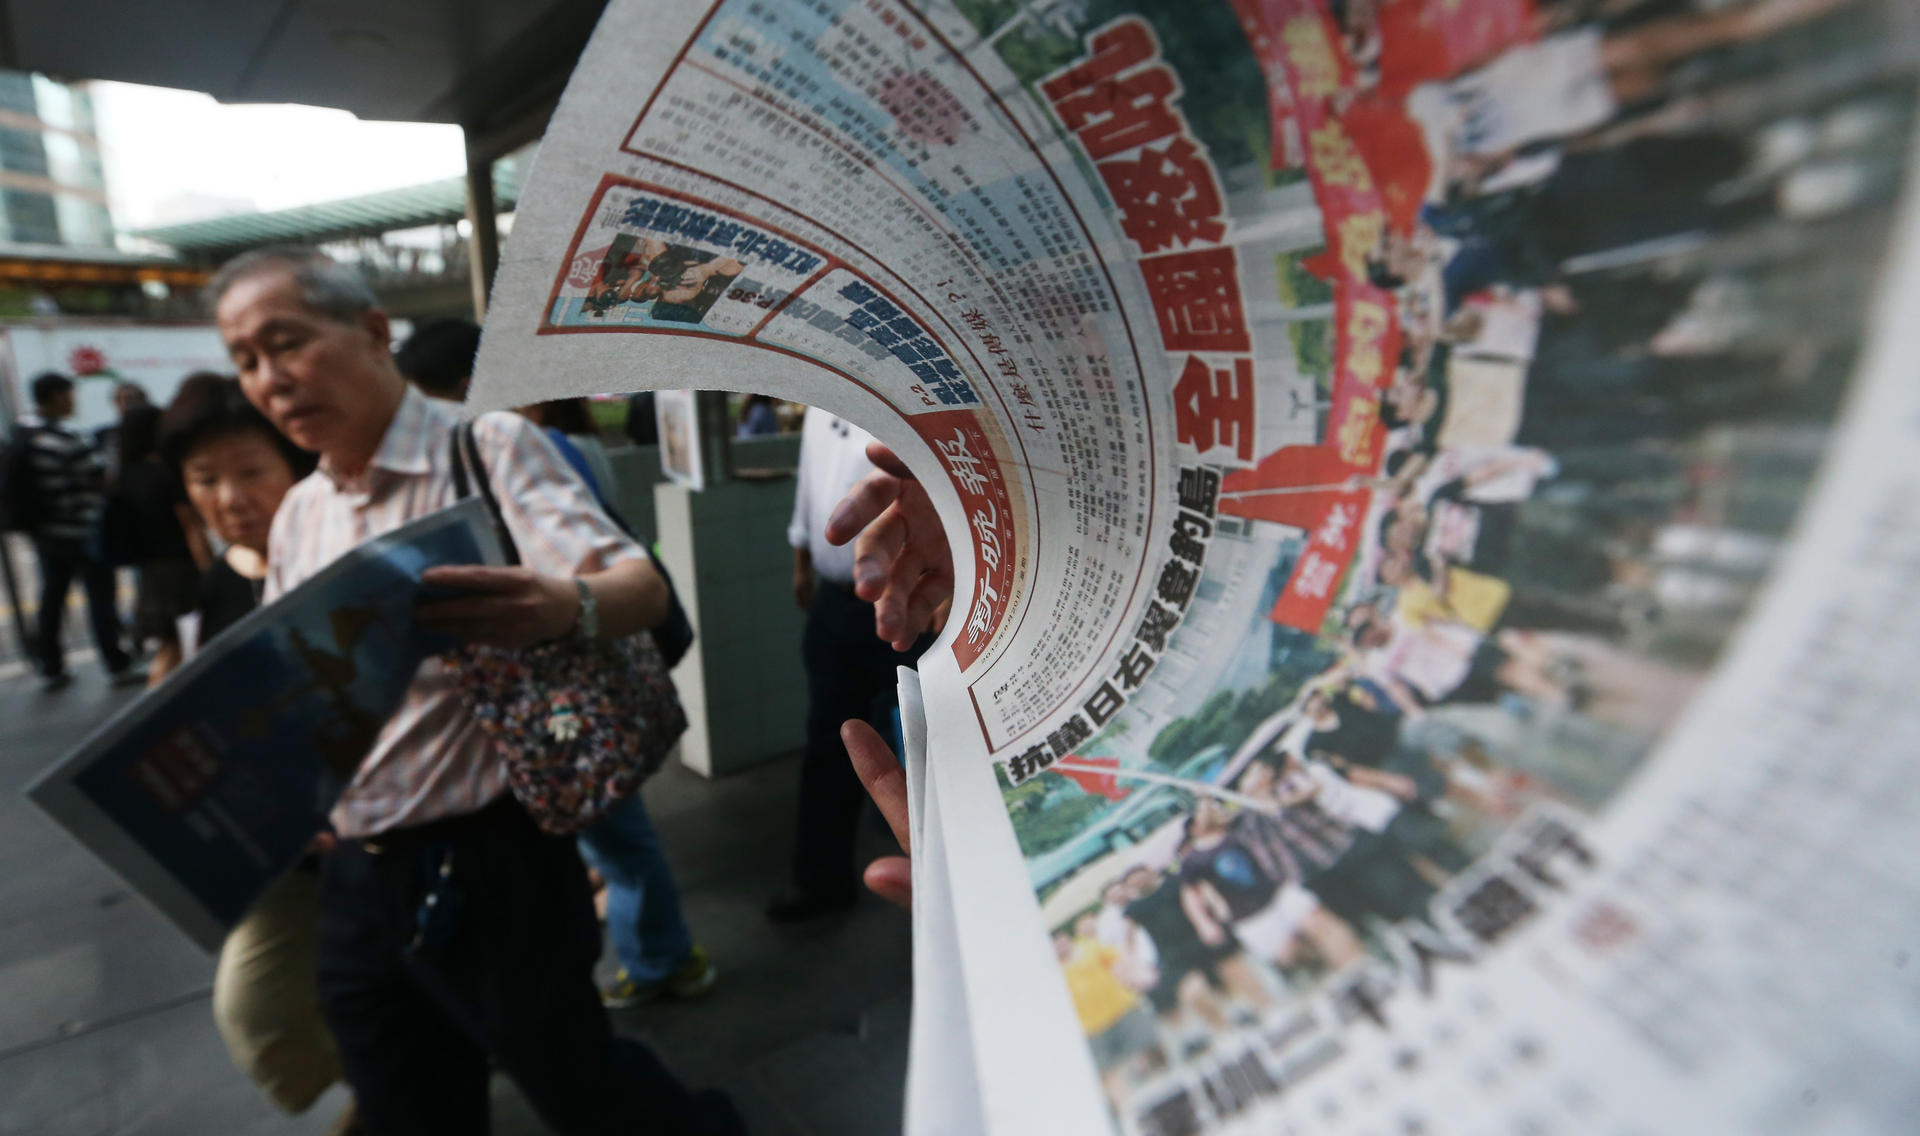 The New Evening Post debuted to mixed reviews. Photo: Sam Tsang